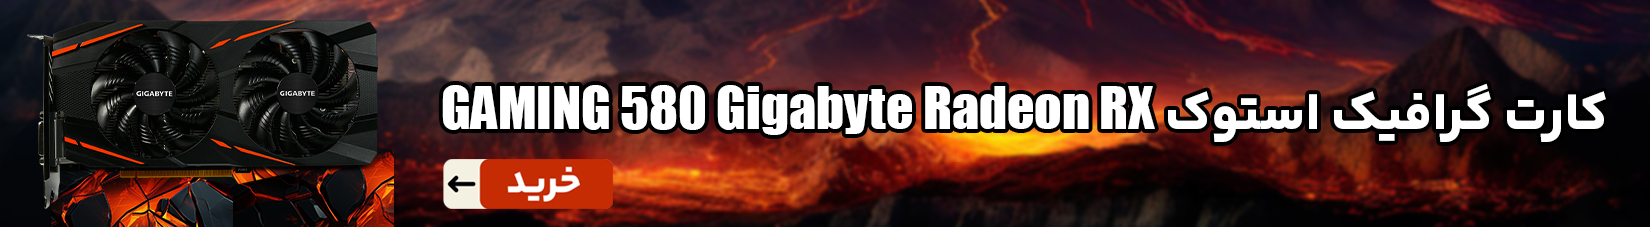 کارت گرافیک استوک گیگابایت مدل Gigabyte Radeon RX 580 GAMING ظرفیت 8 گیگابایت